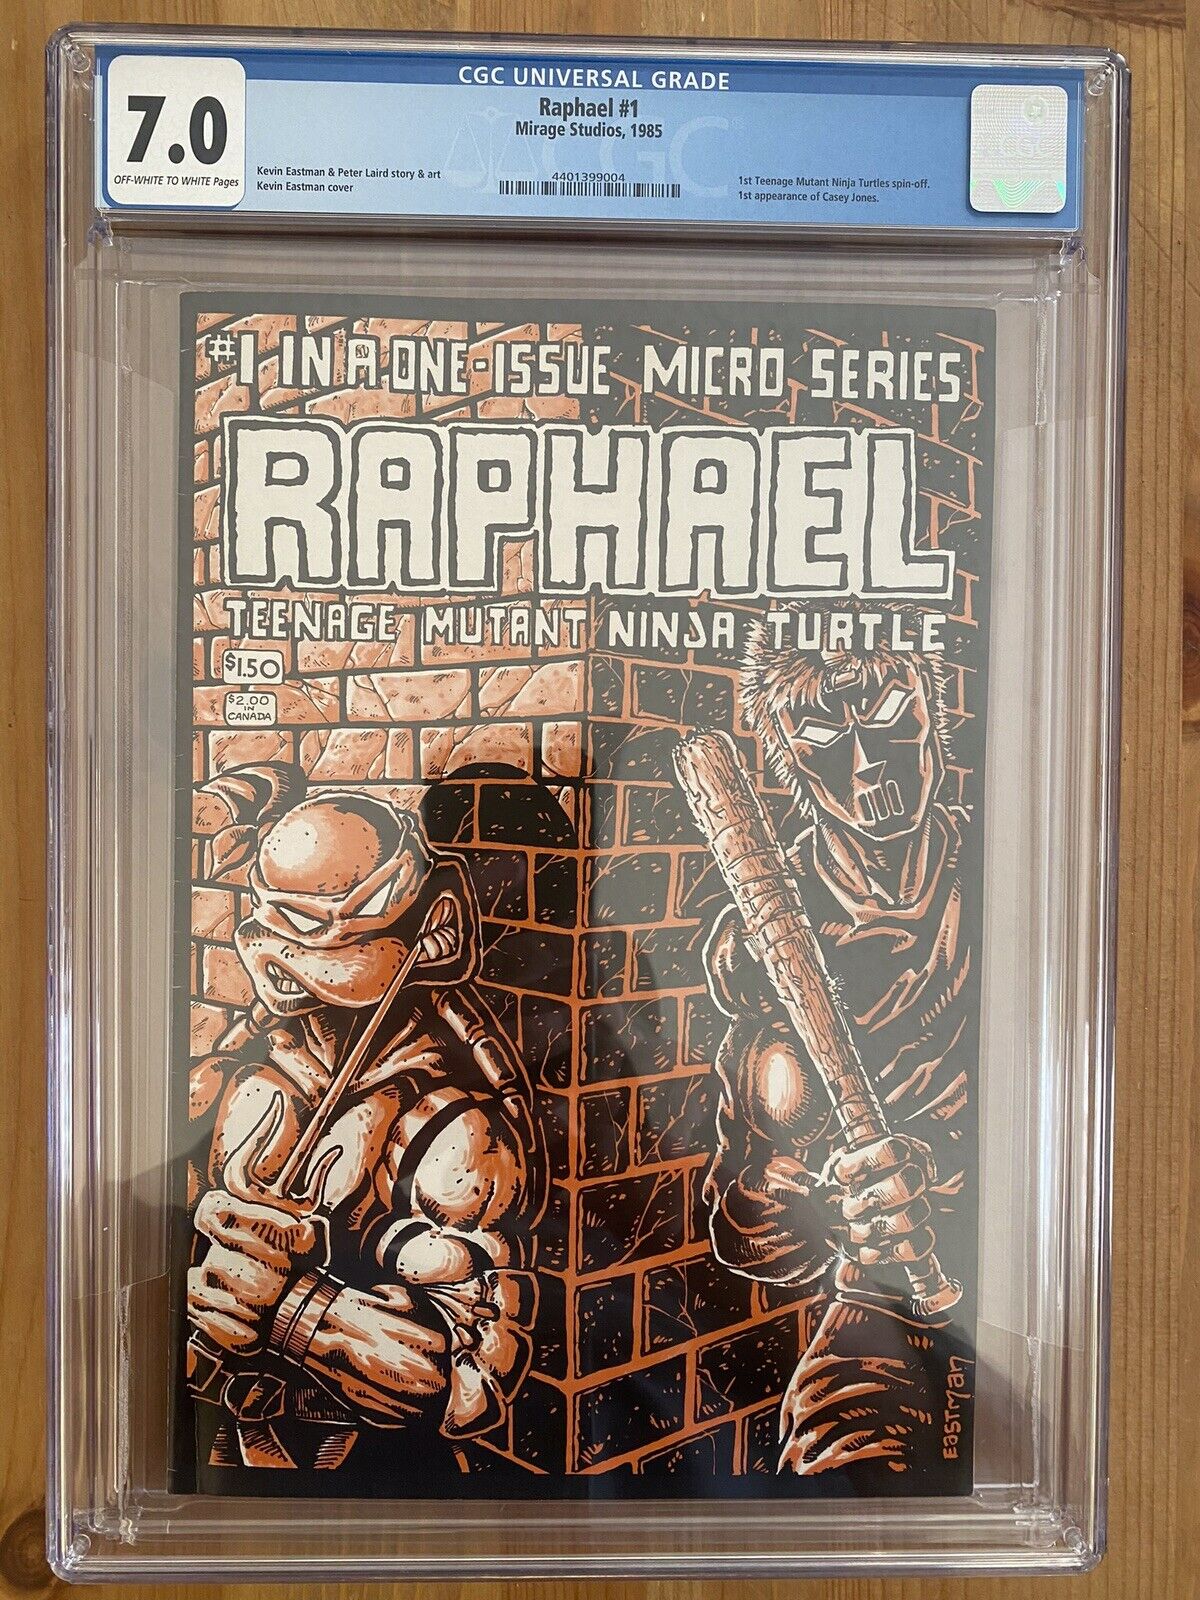 Raphael #1 Teenage Mutant Ninja Turtles (TMNT) 1st Print CGC 7.0 1985 Mirage